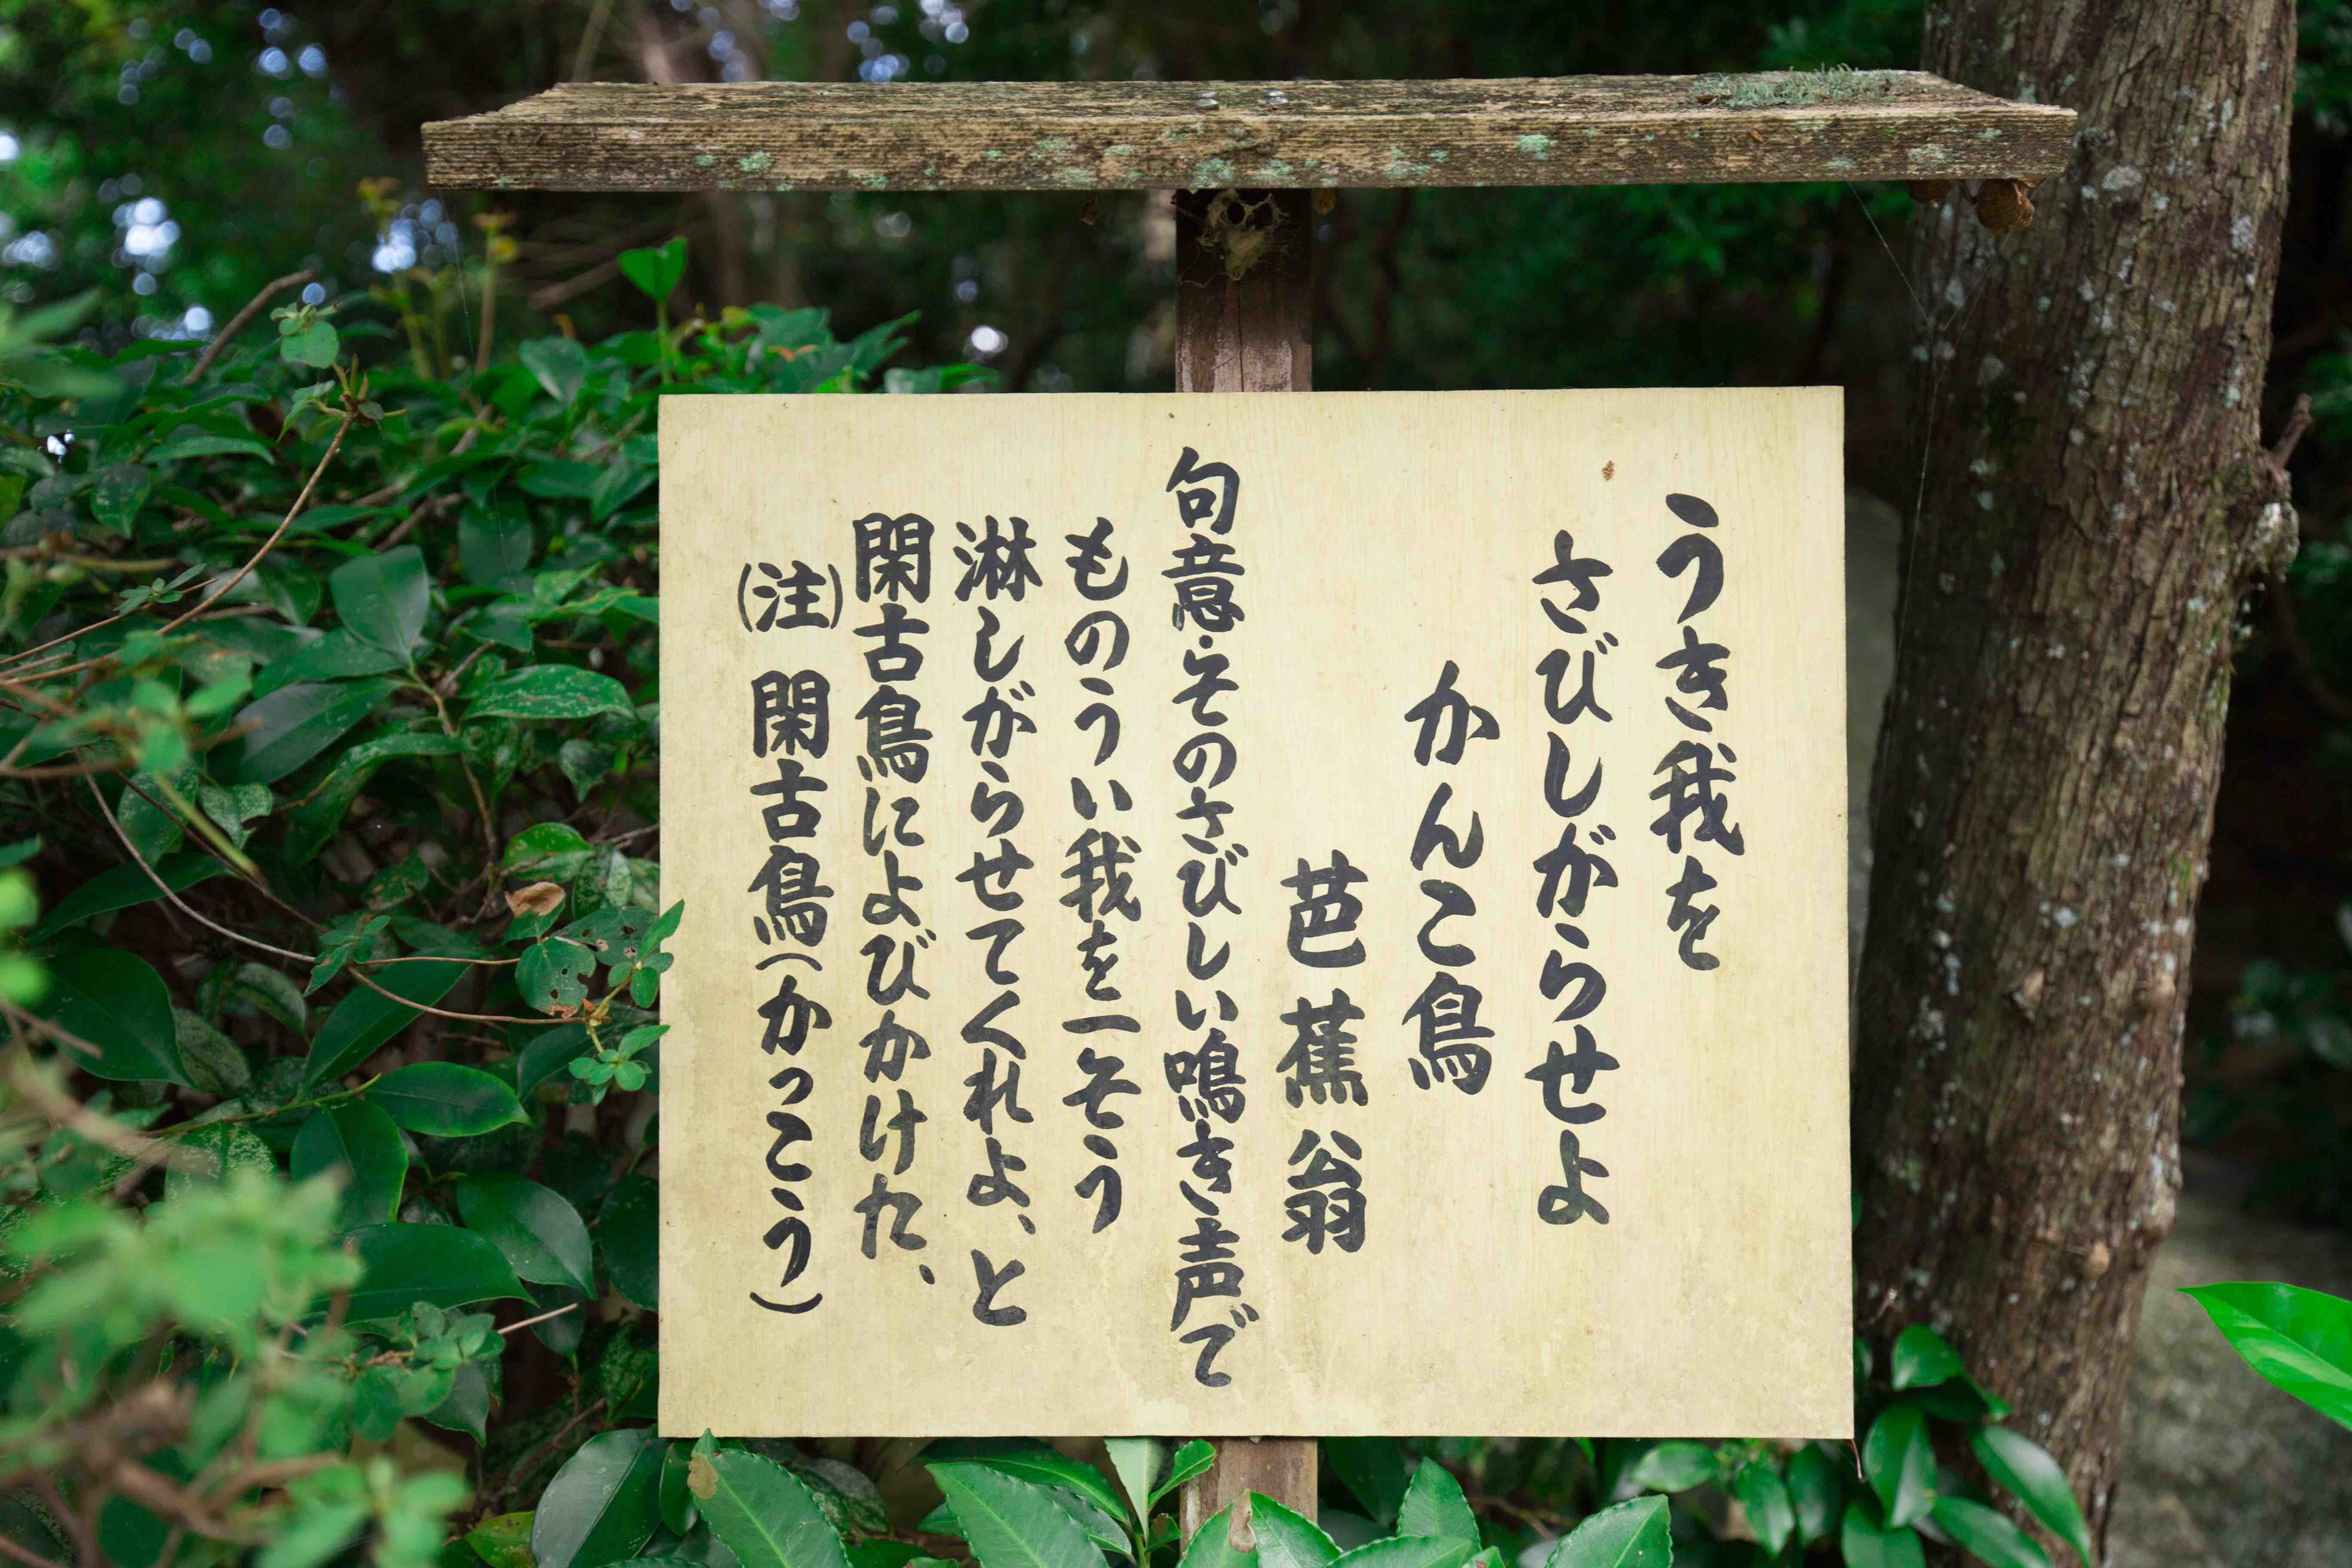 新緑に包まれる金福寺の芭蕉庵の裏にある看板『うき我を　さびしがらせよ　かんこ鳥』